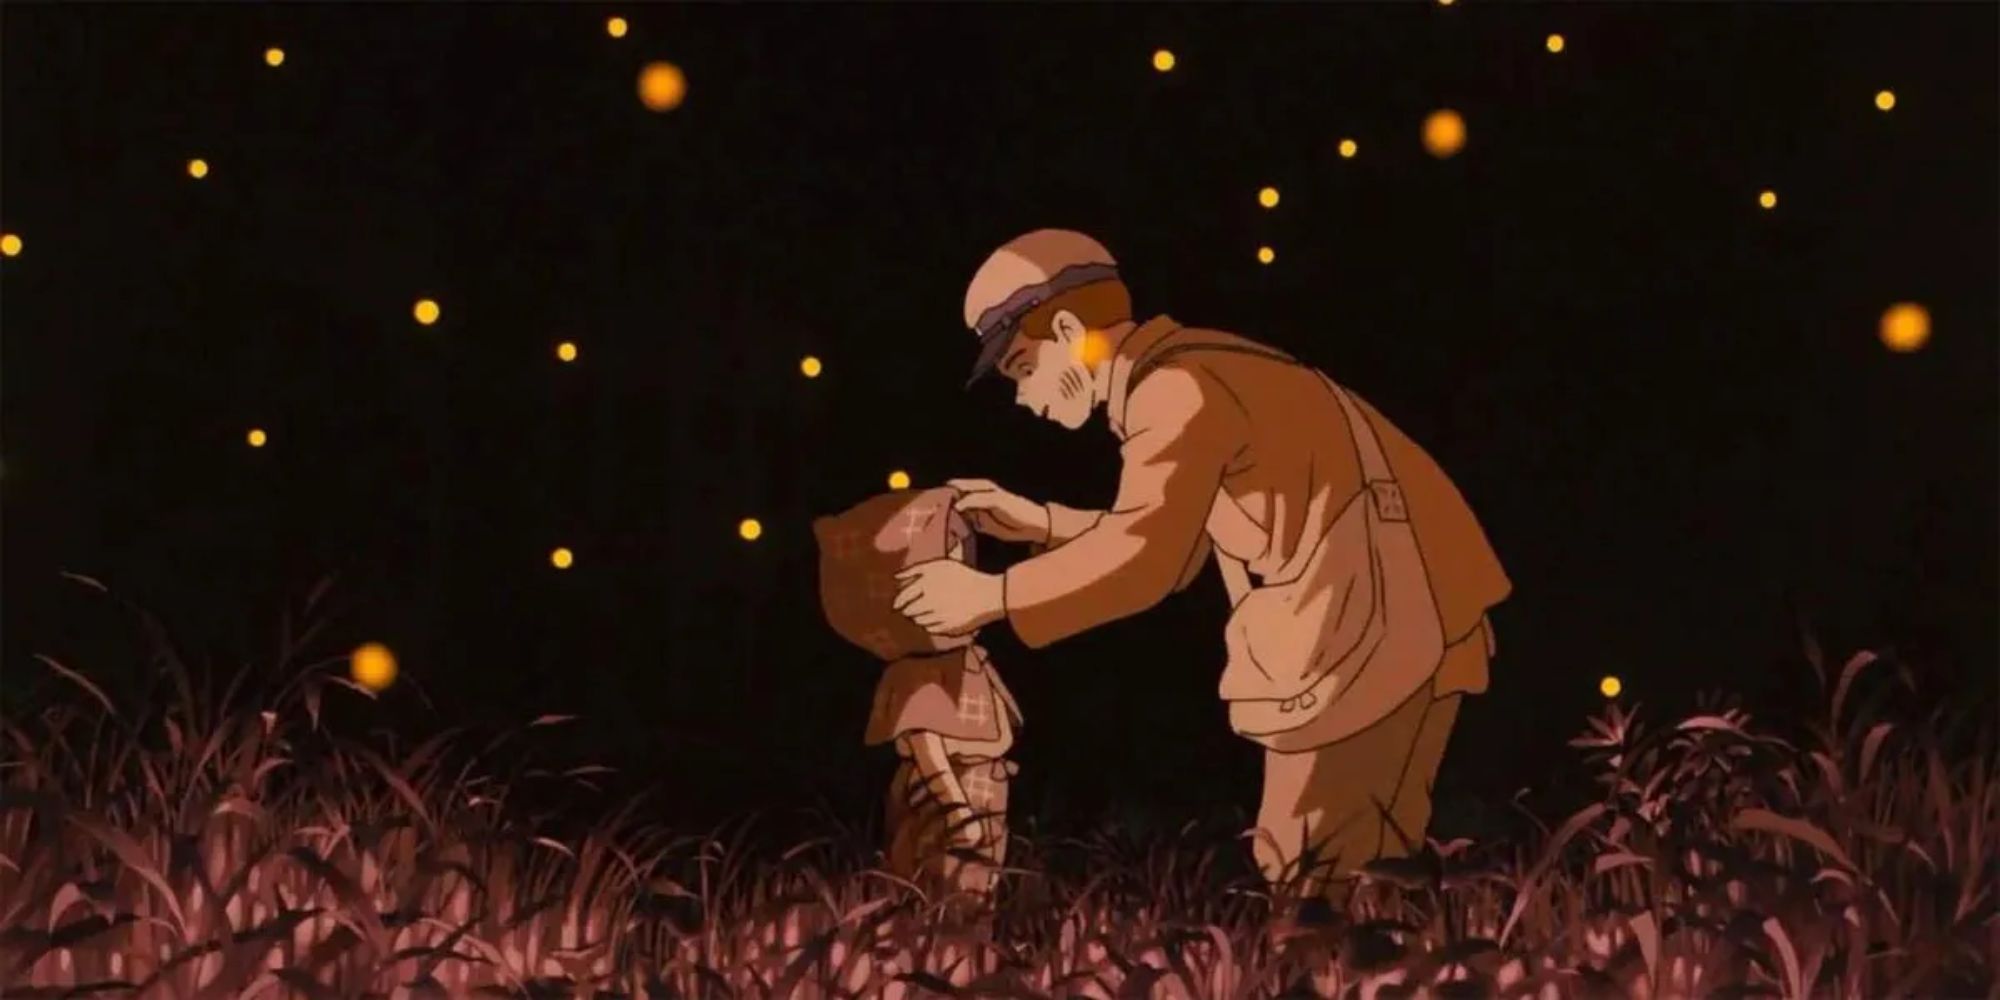 Seita dan Setsuko berdiri di lapangan berumput di malam hari sementara kunang-kunang beterbangan di sekitar mereka